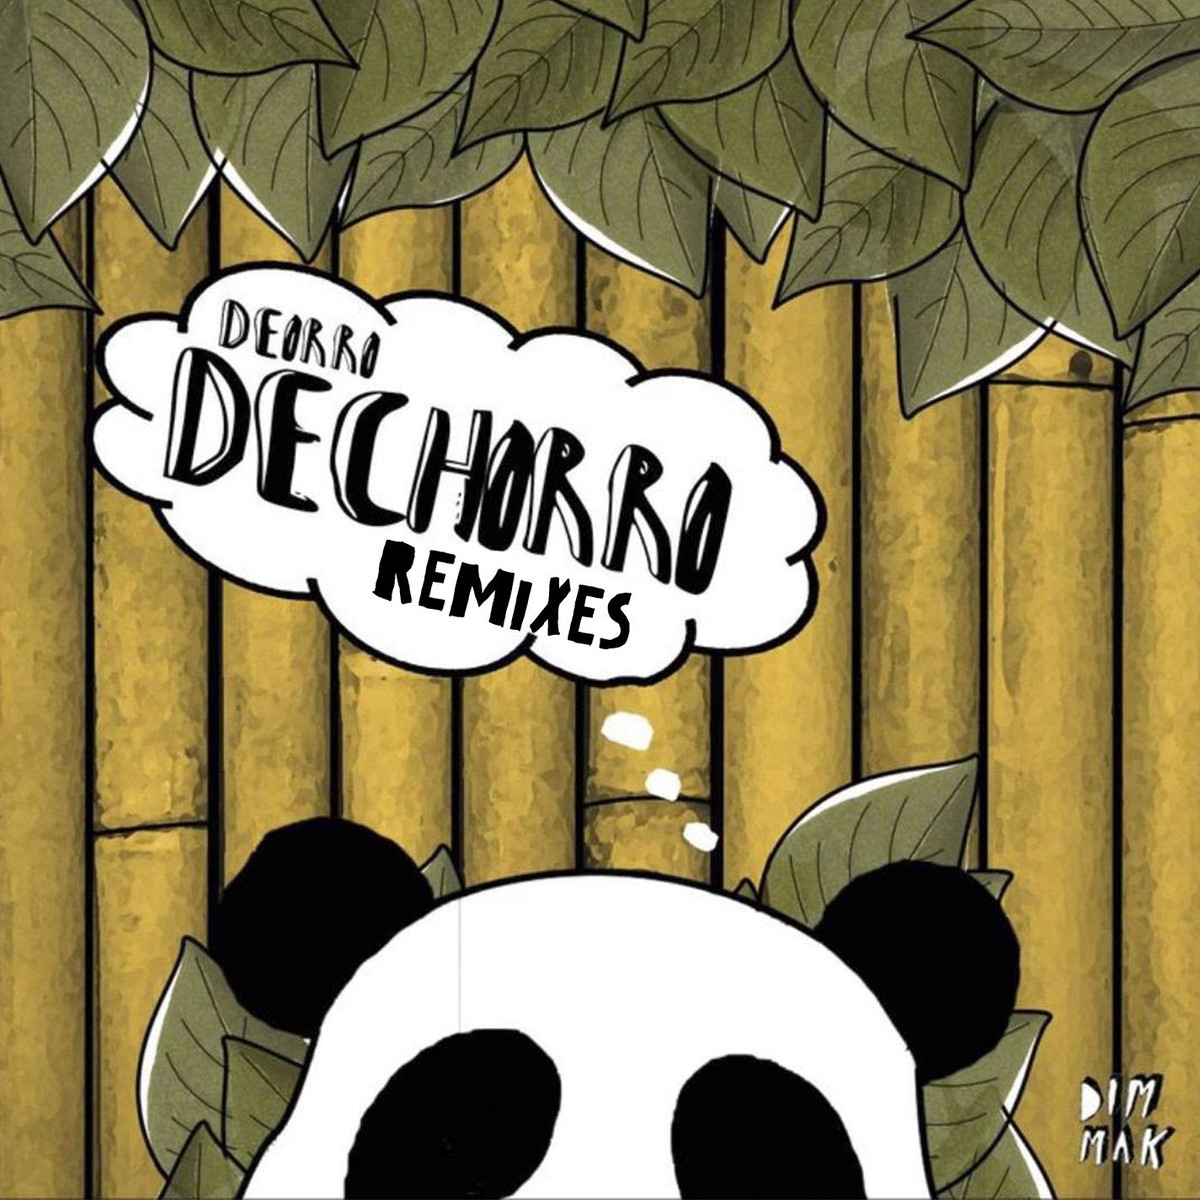 Dechorro (Original Mix)